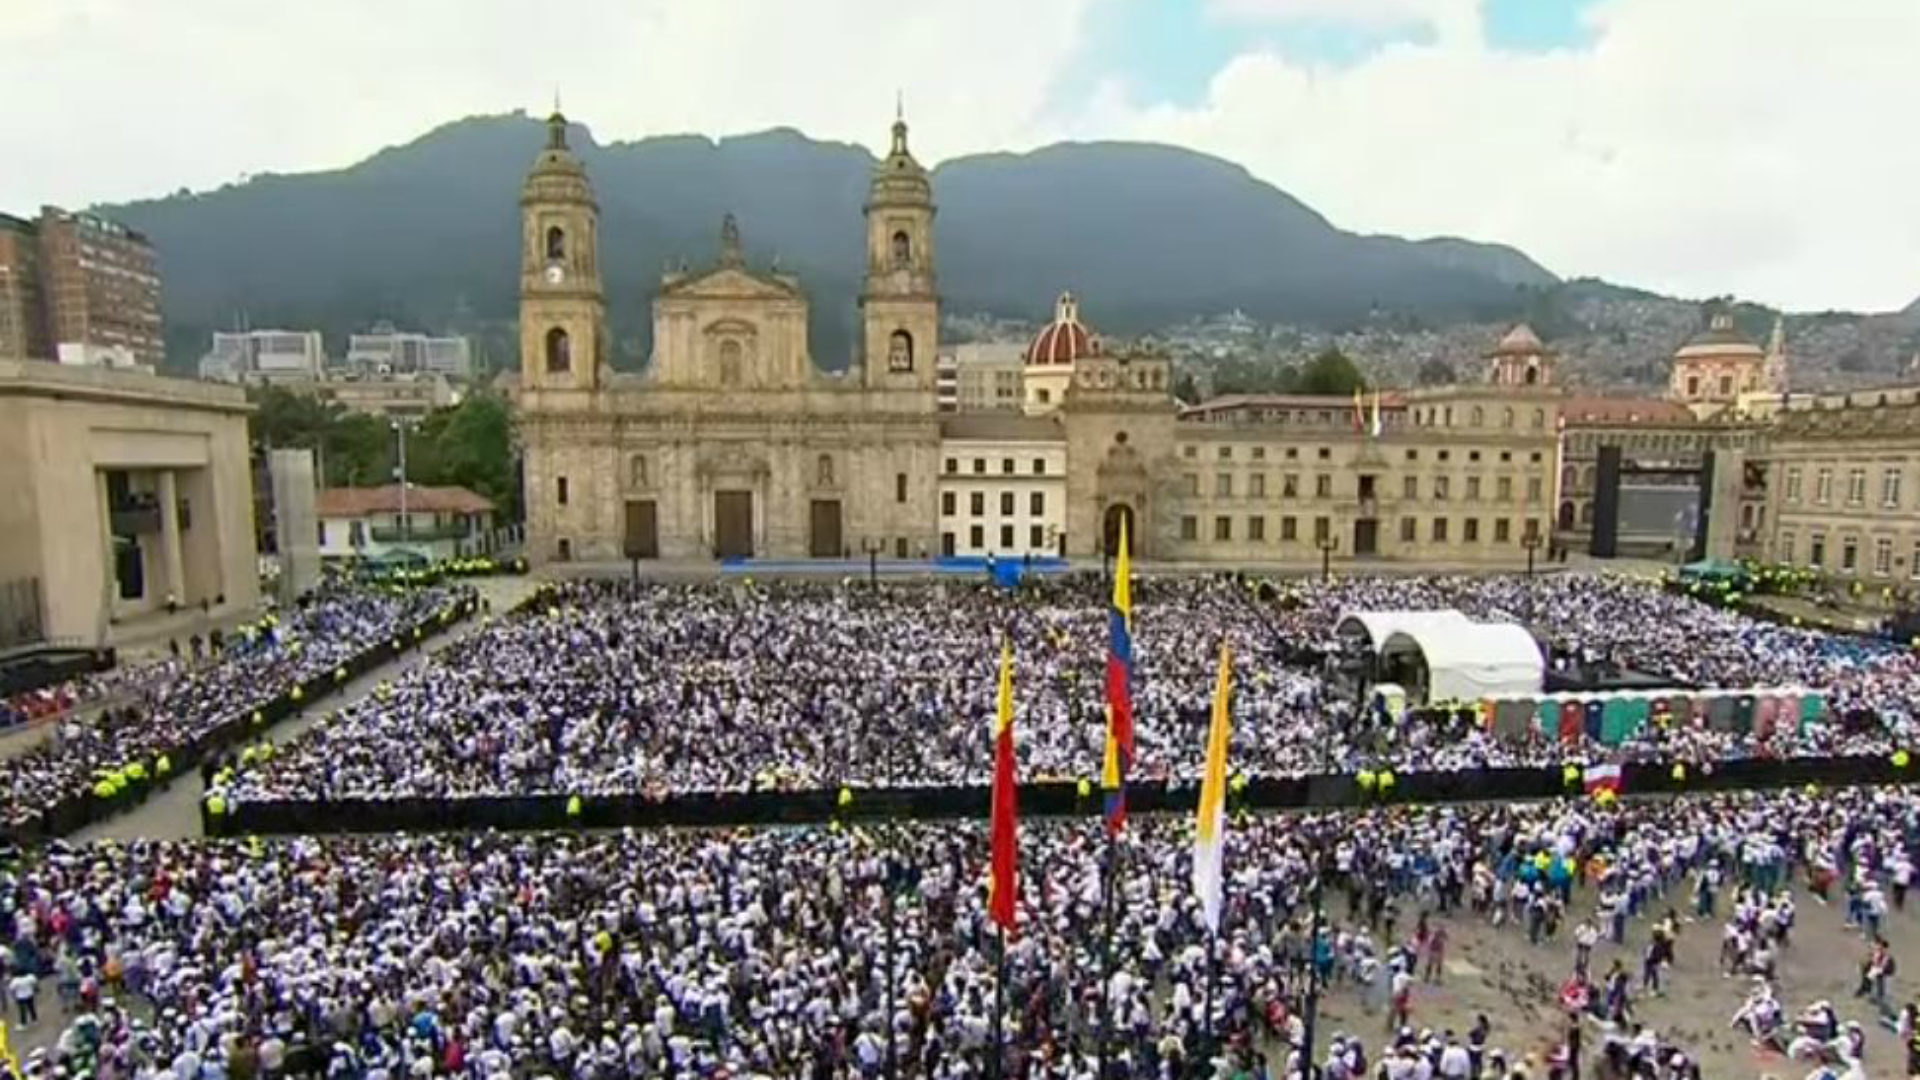 La foule attend le pape François sur la place de la cathédrale de Bogota (capture d'écran CTV)